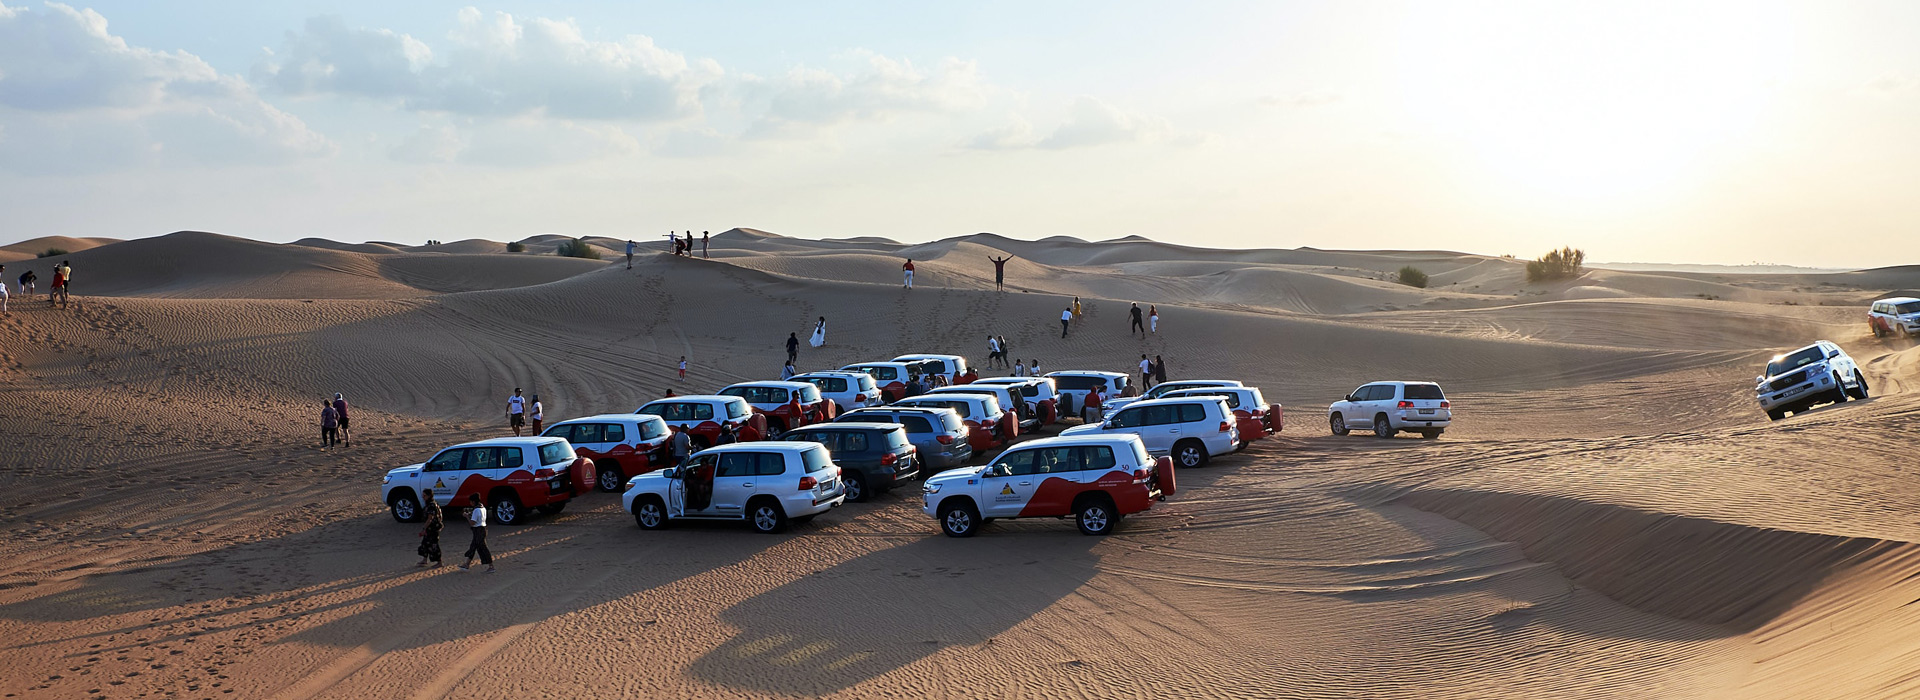 Desert safari in Abu Dhabi | Desert safari in Dubai